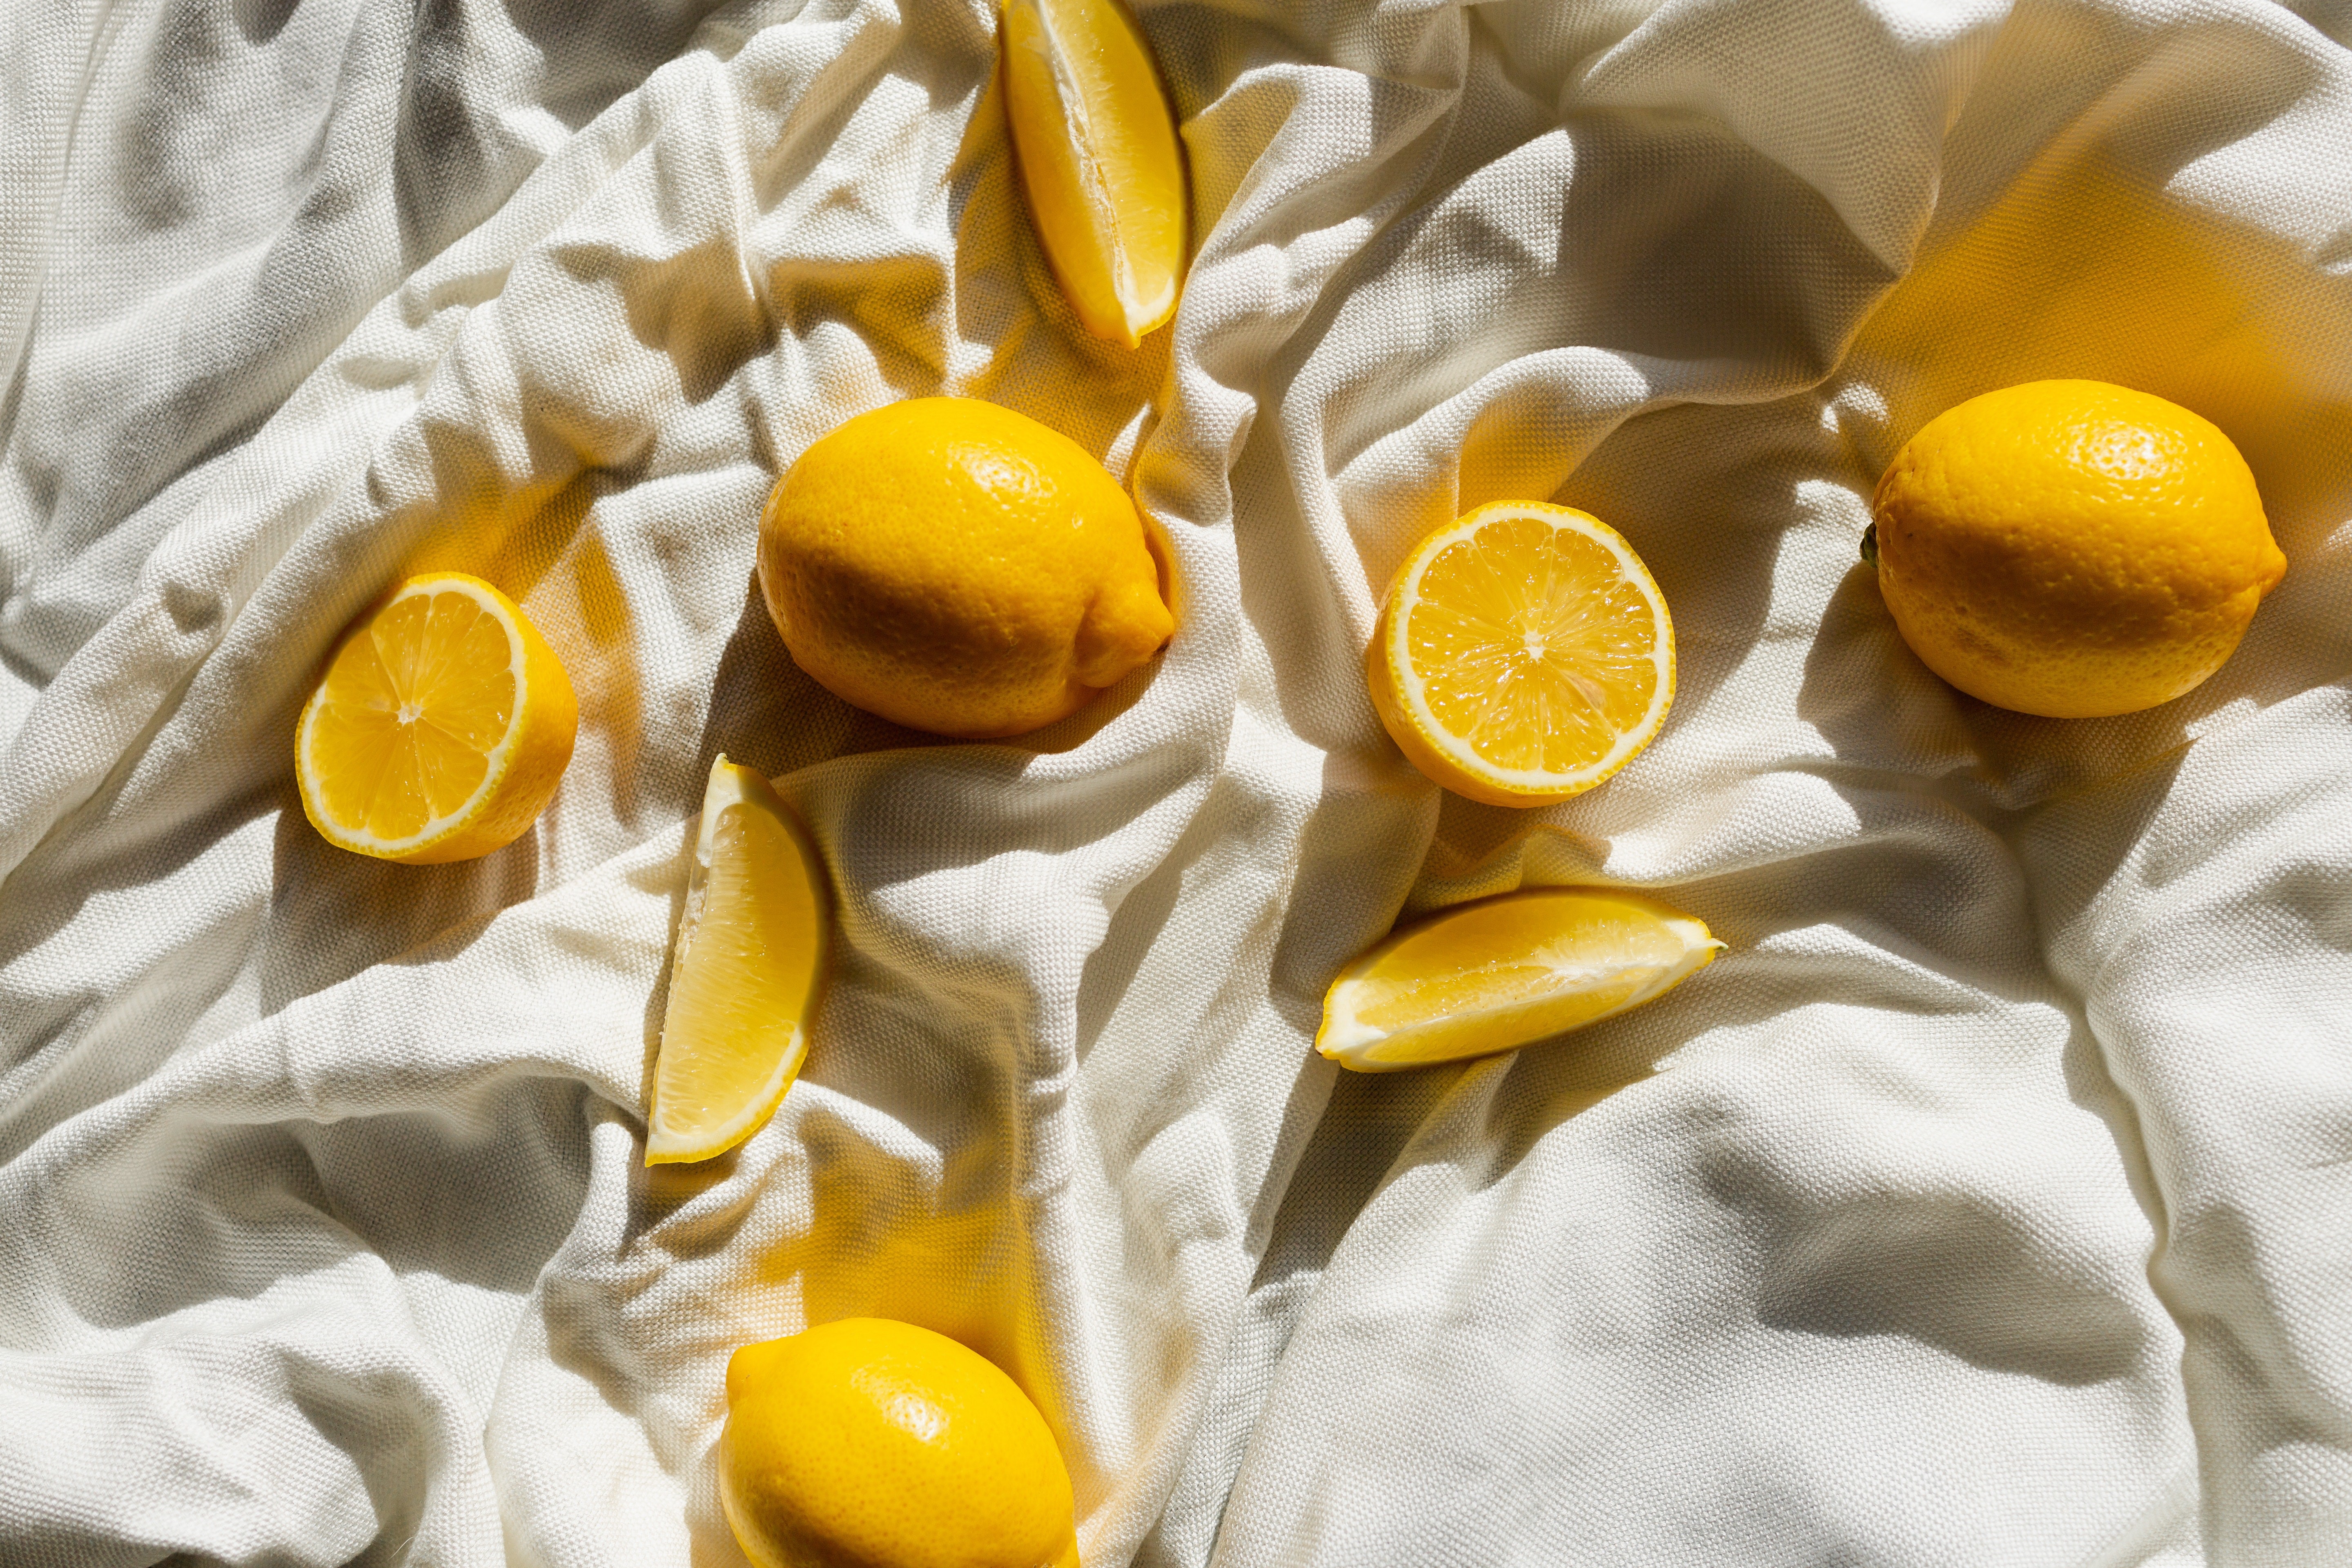 الليمون يعكس عوامل البيئة ويقلل افراز الميلانين المتسبب في اسمرار الجلد